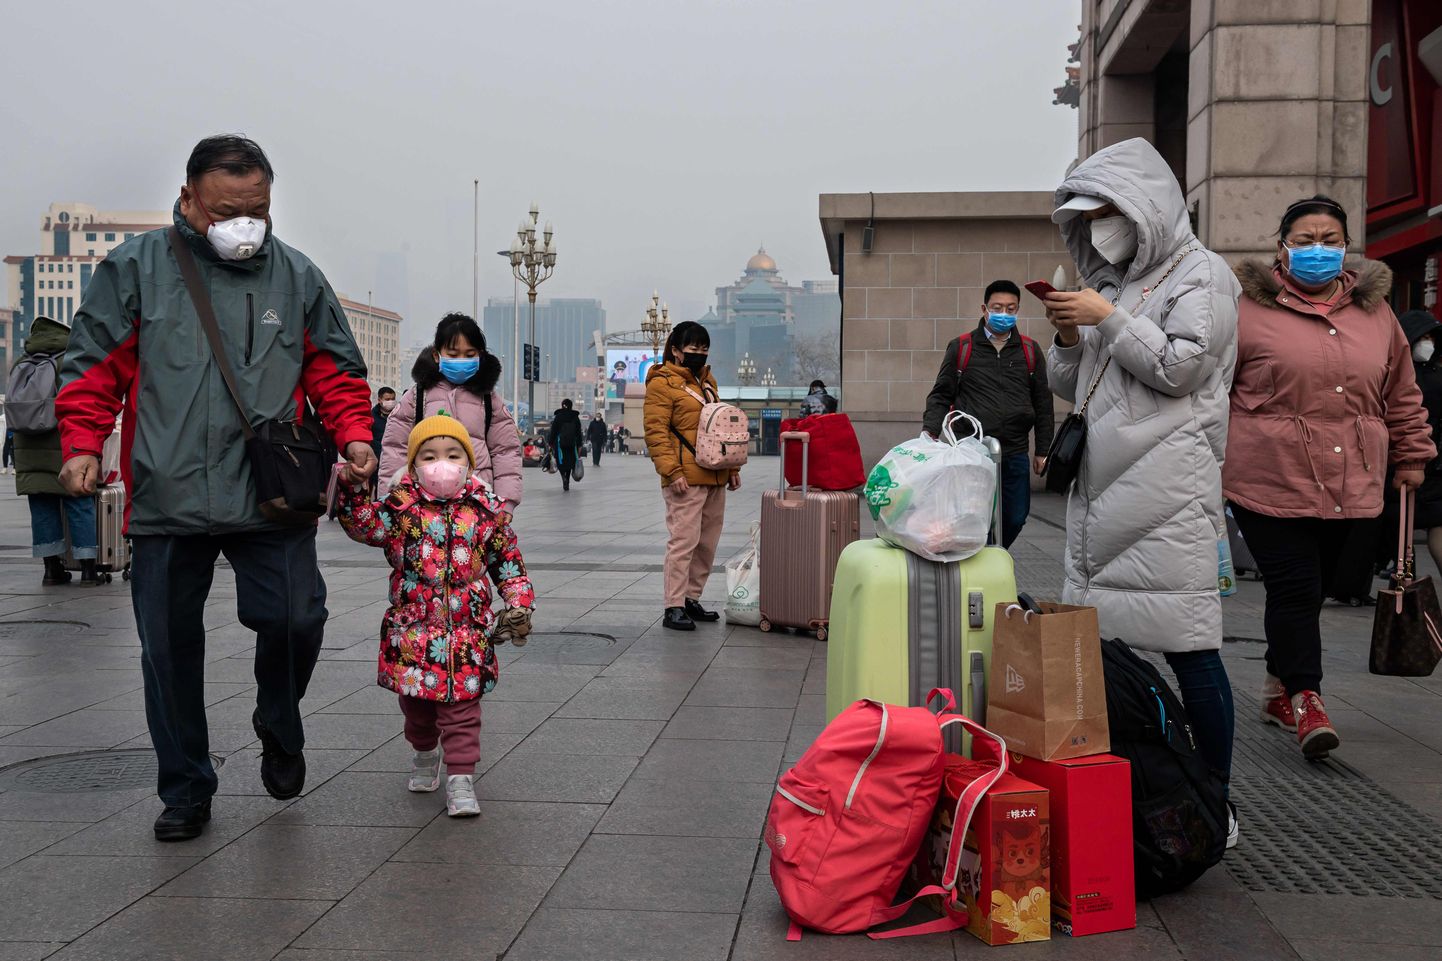 Inimesed liikumas Pekingis marlimaskidega seoses riiki tabanud koroonaviiruse puhanguga.